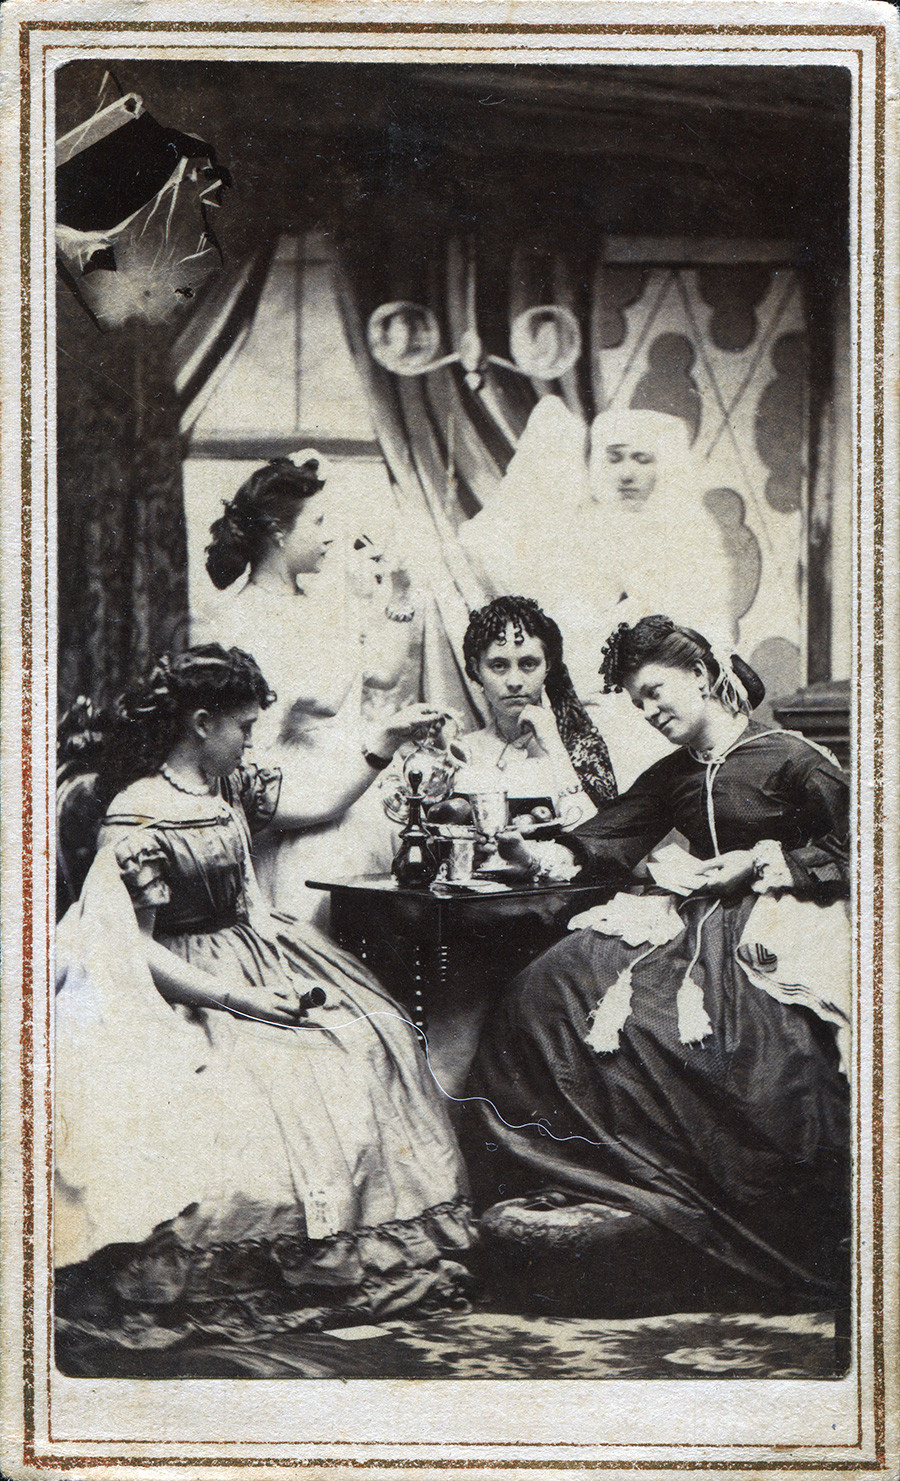 Une carte de visite représentant une réunion de jeunes femmes dans un parloir, avec une silhouette fantomatique en arrière-plan, aux États-Unis vers 1860